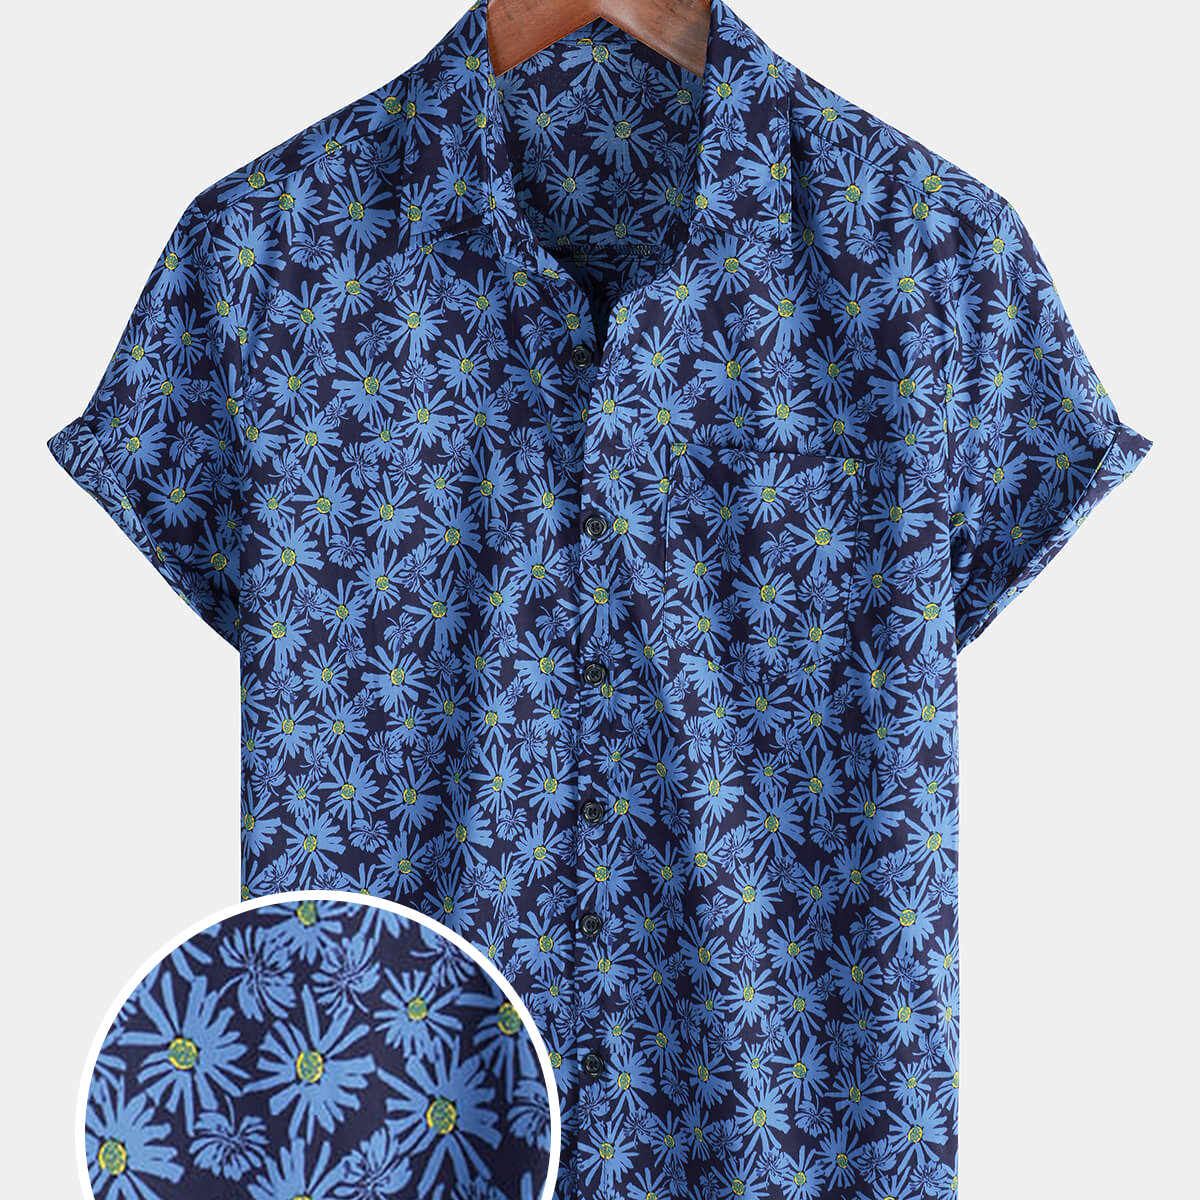 Men's Short Sleeve Floral Daisy Pocket Button Up Cotton Beach Shirt